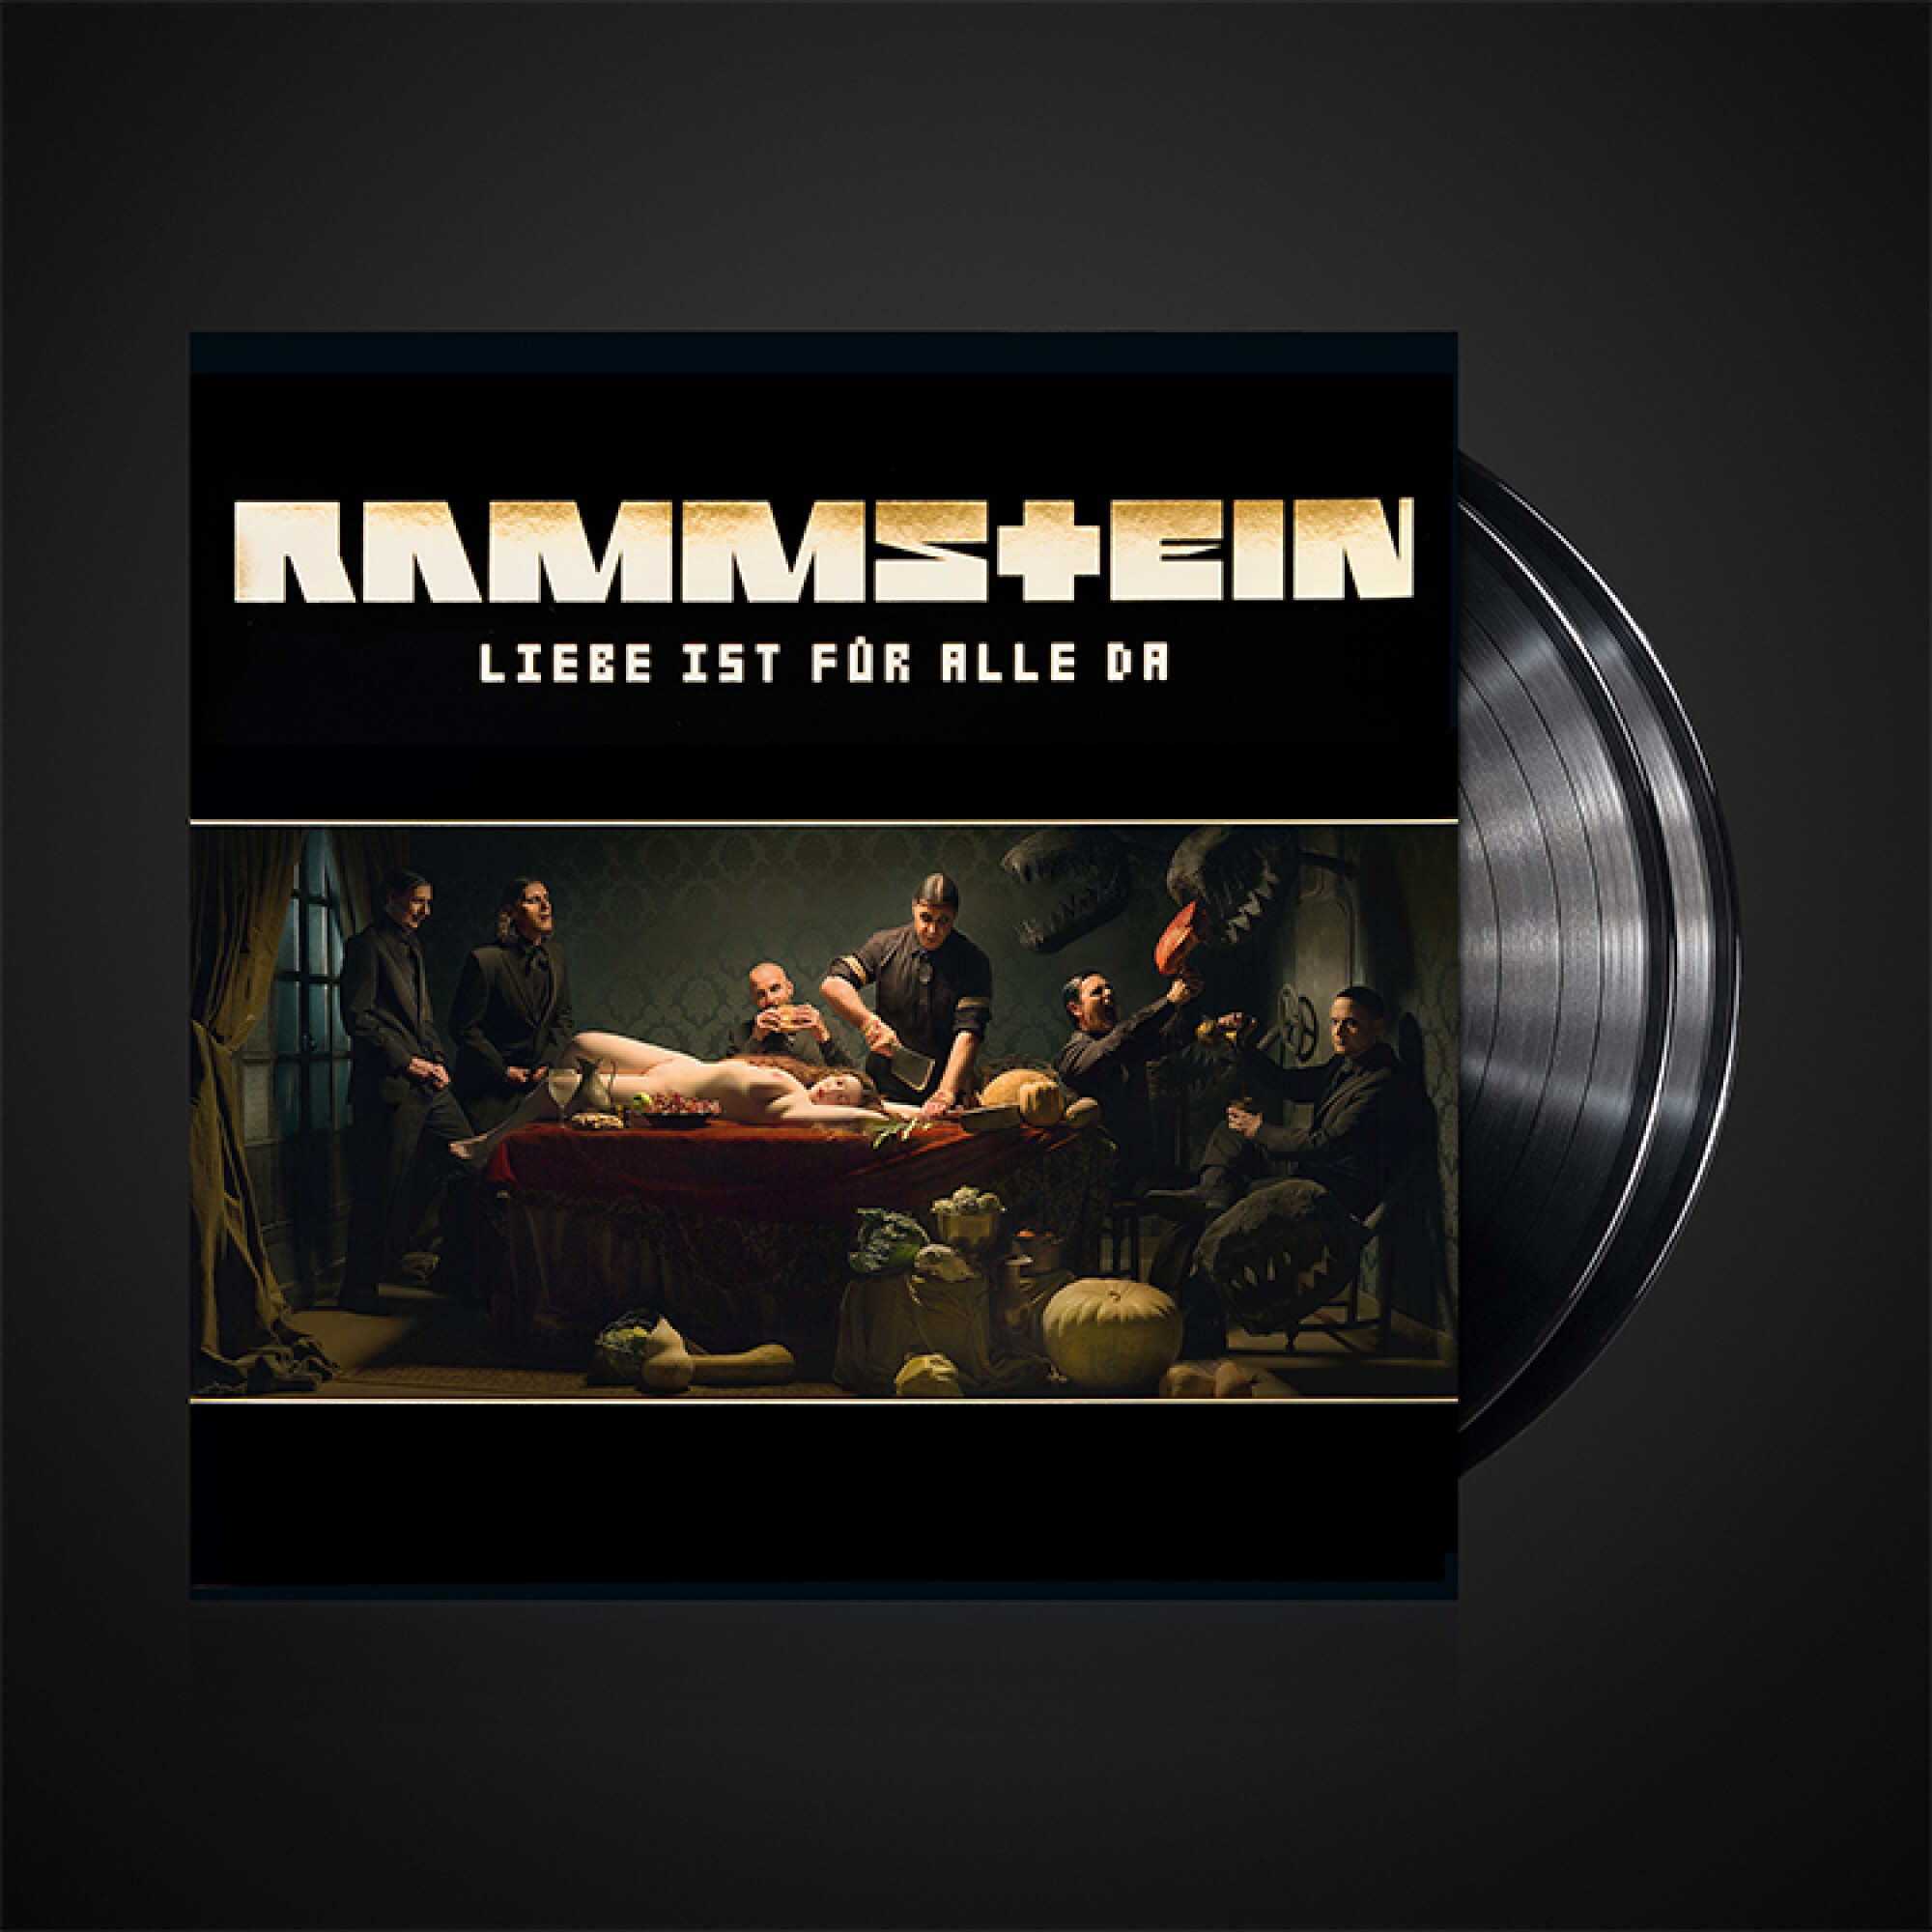 Rammstein Album ”Liebe ist für alle da”, Vinyl